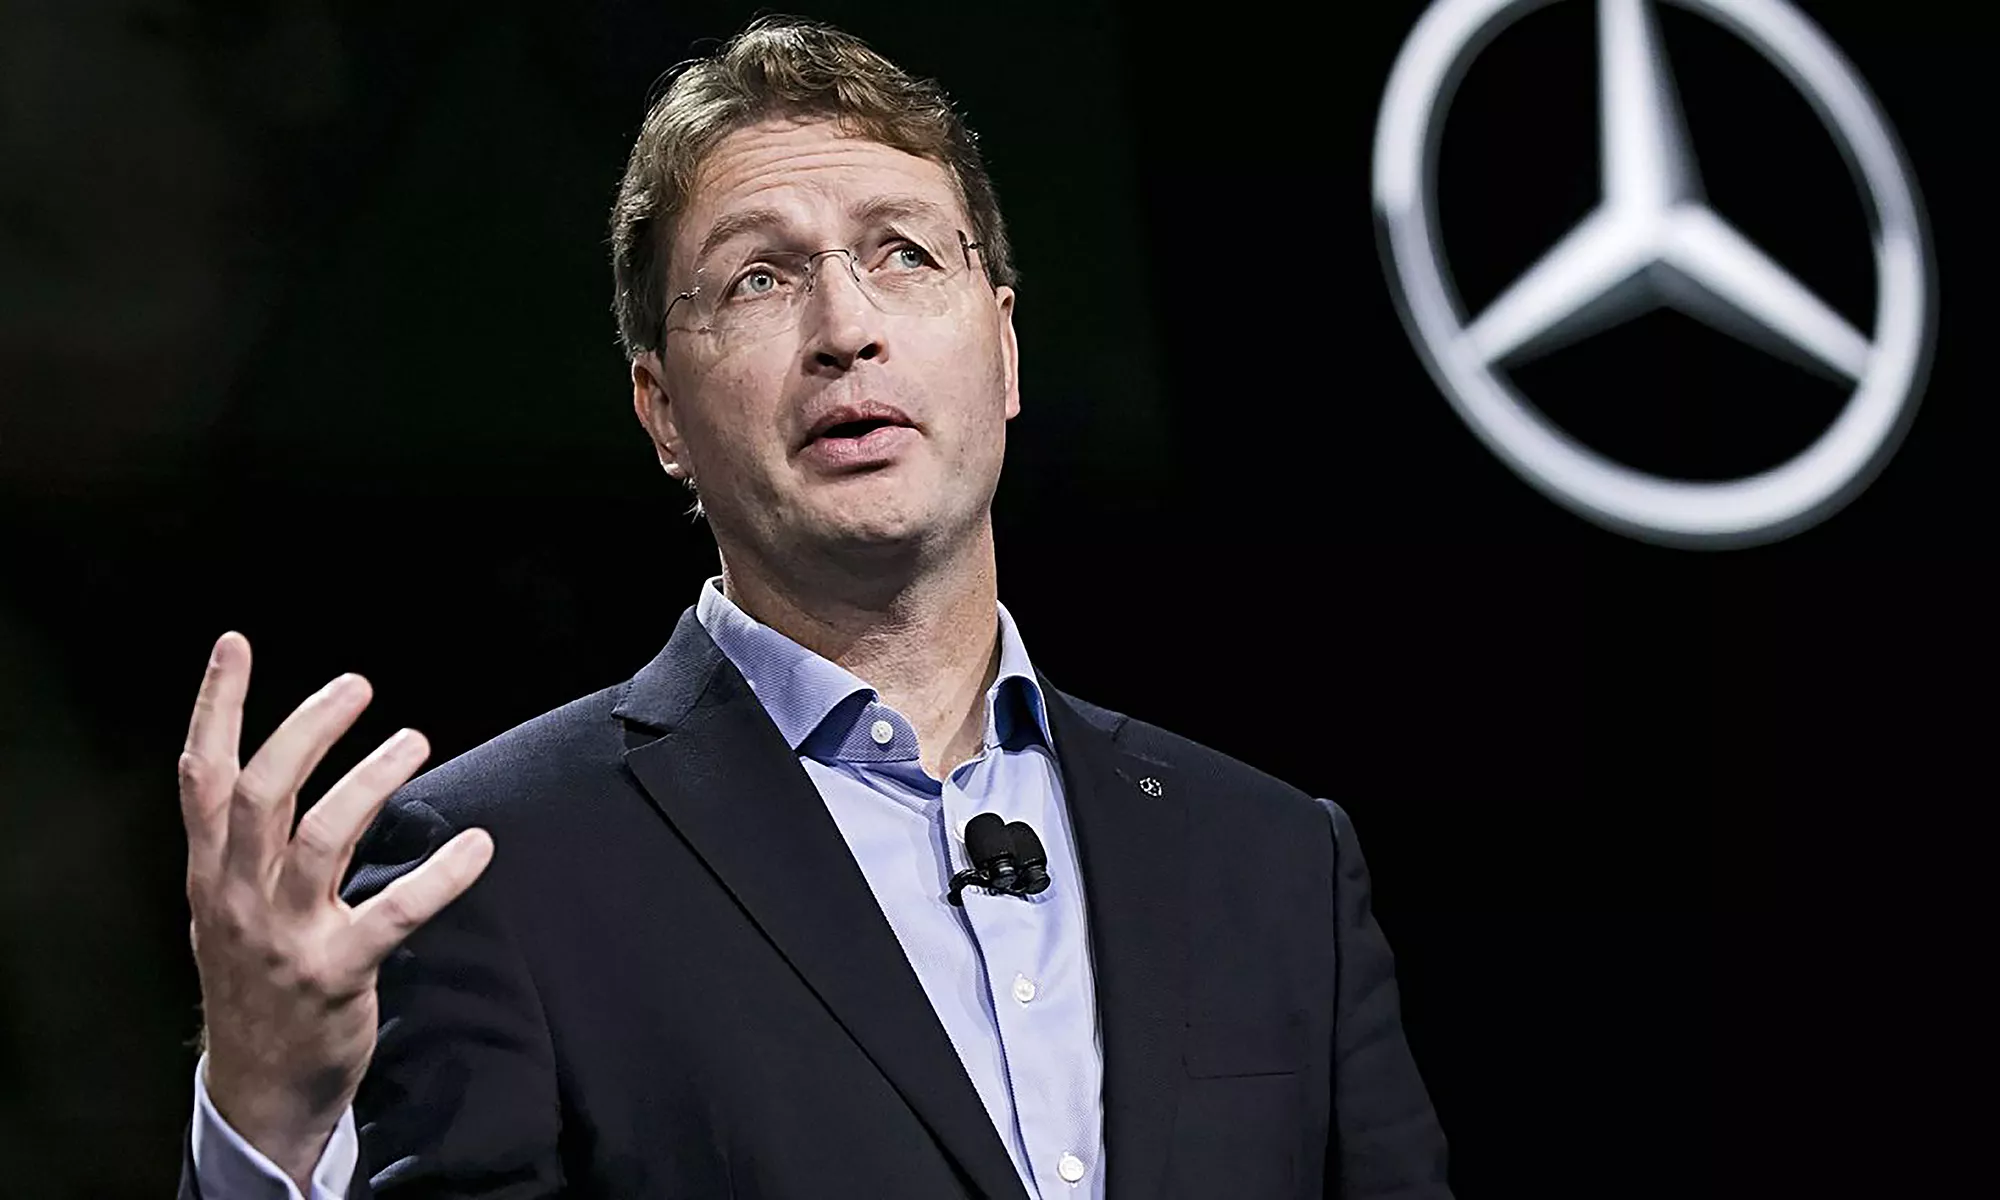 Ola Kallenius, CEO de Mercedes-Benz, tiene claro cómo será el futuro de la marca en los próximos años.